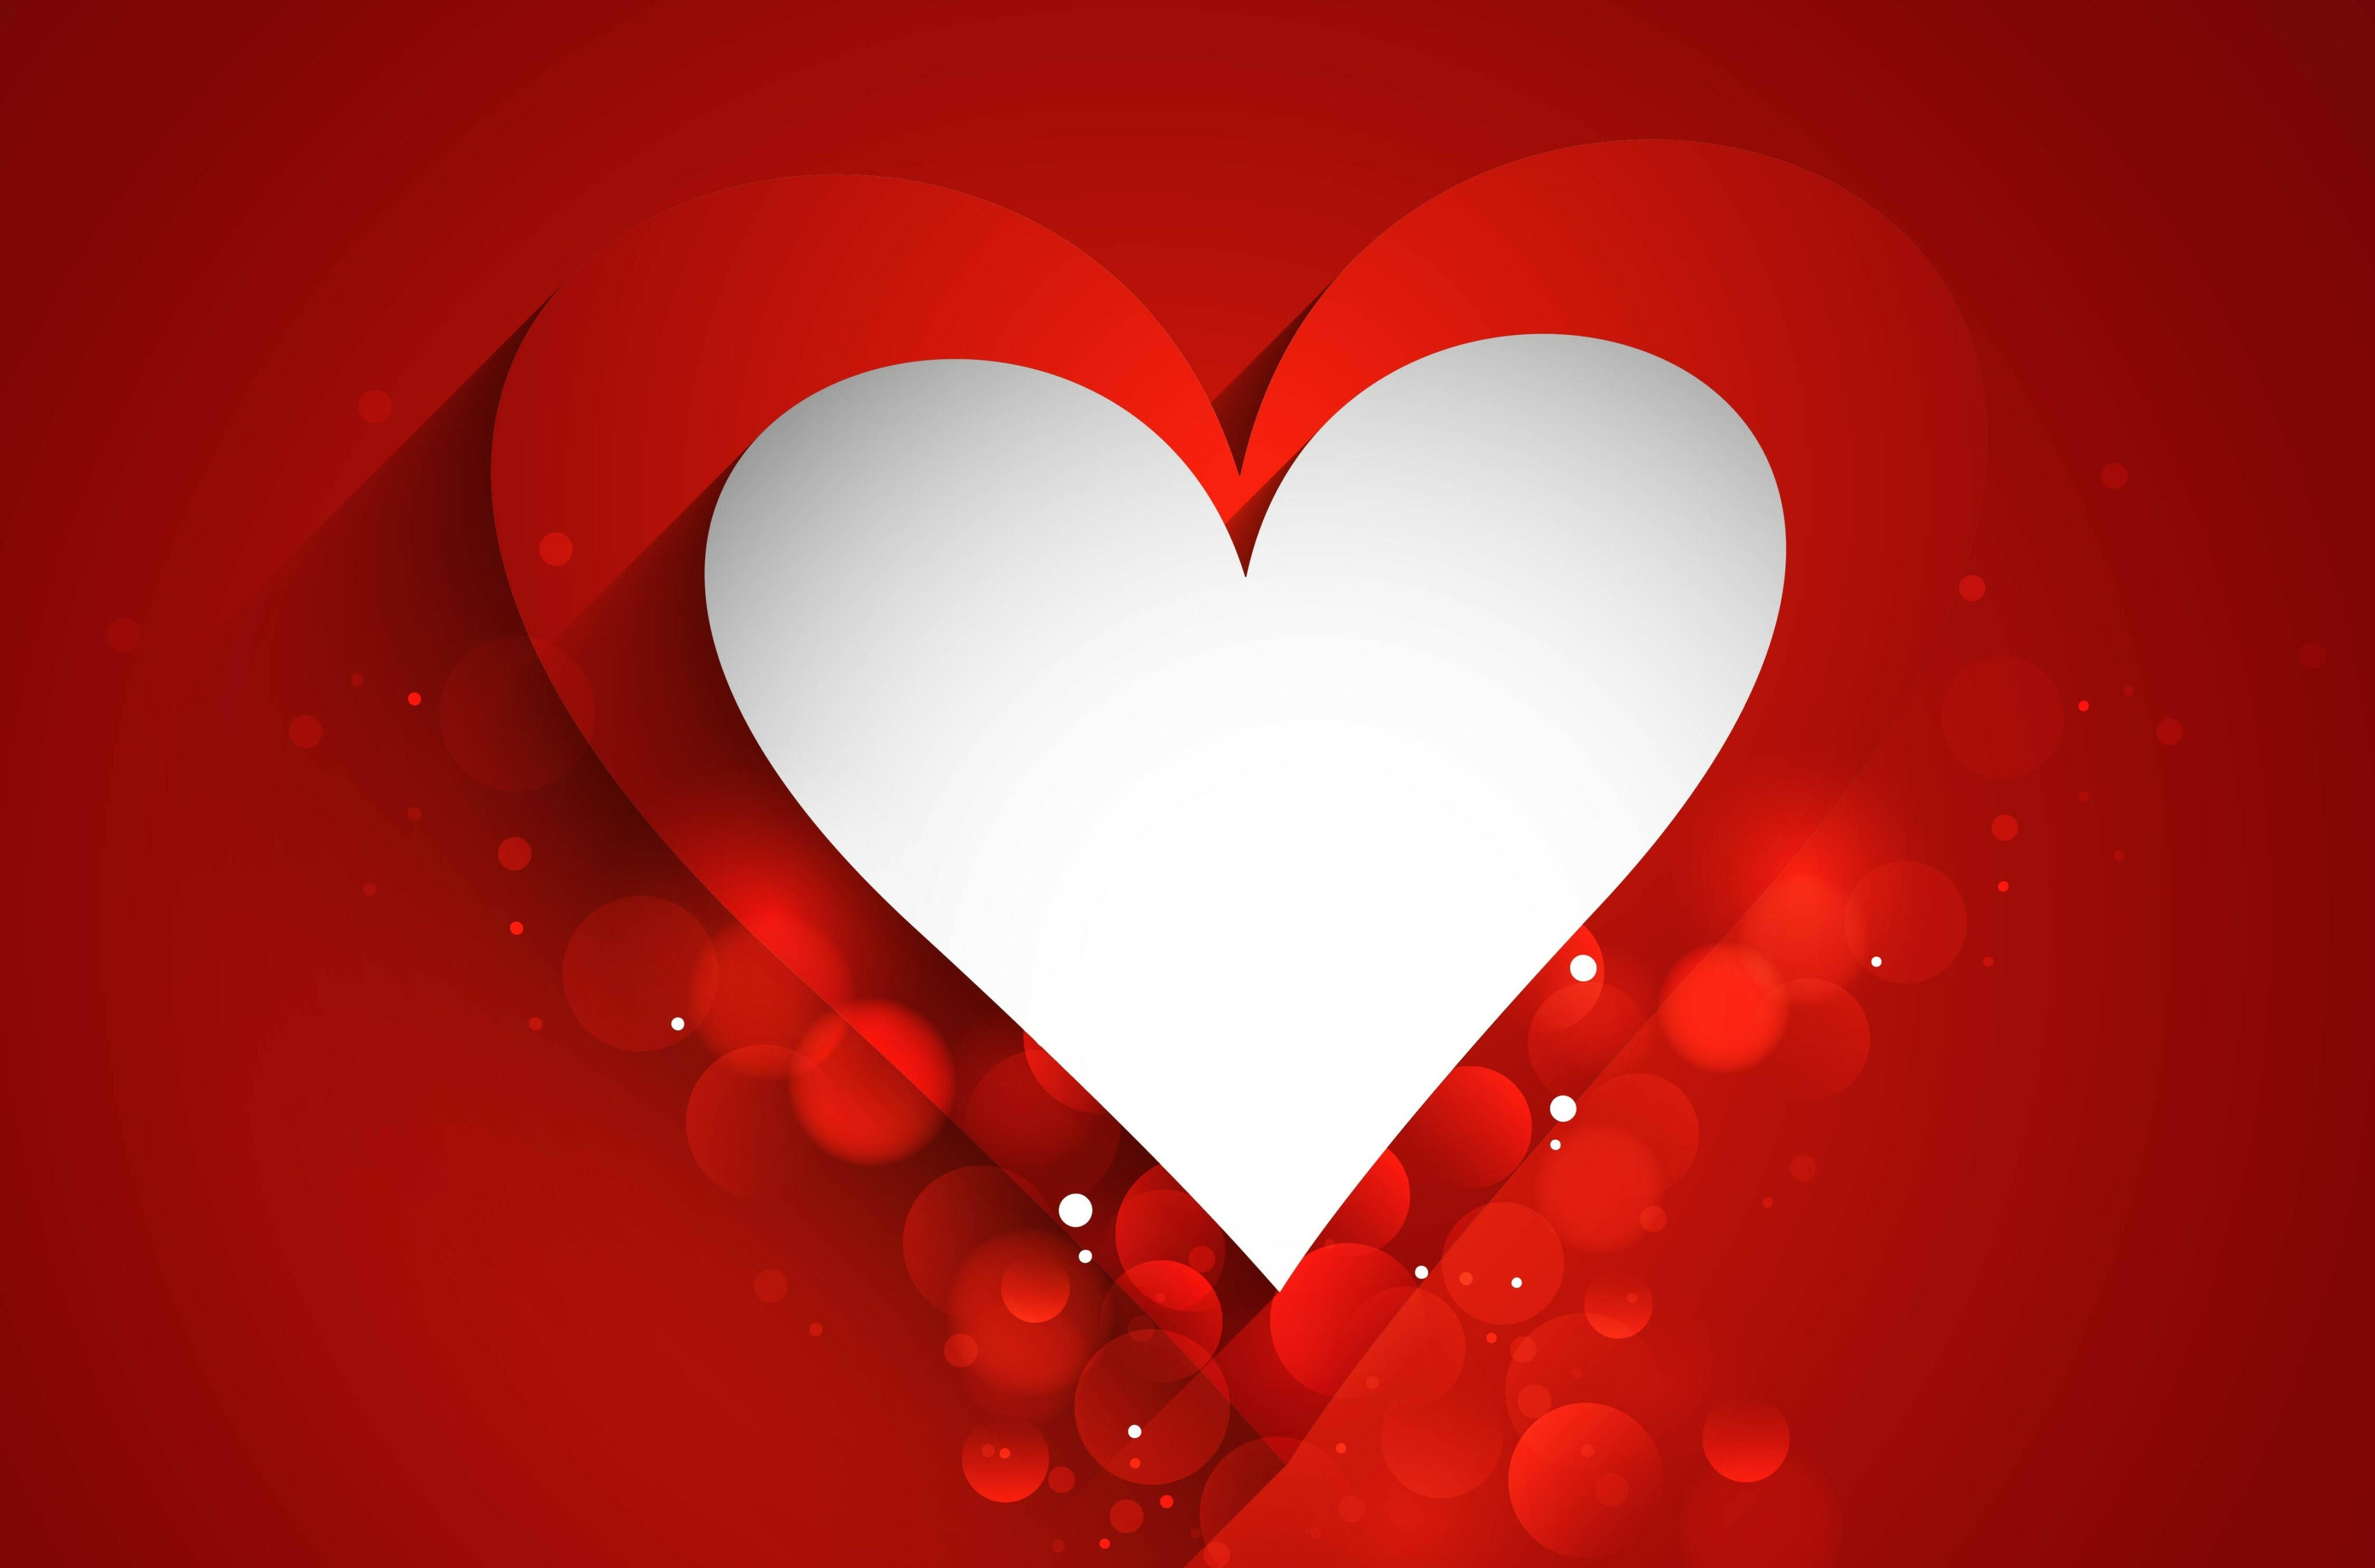 Màu của trái tim thể hiện cho tình yêu đơn phương